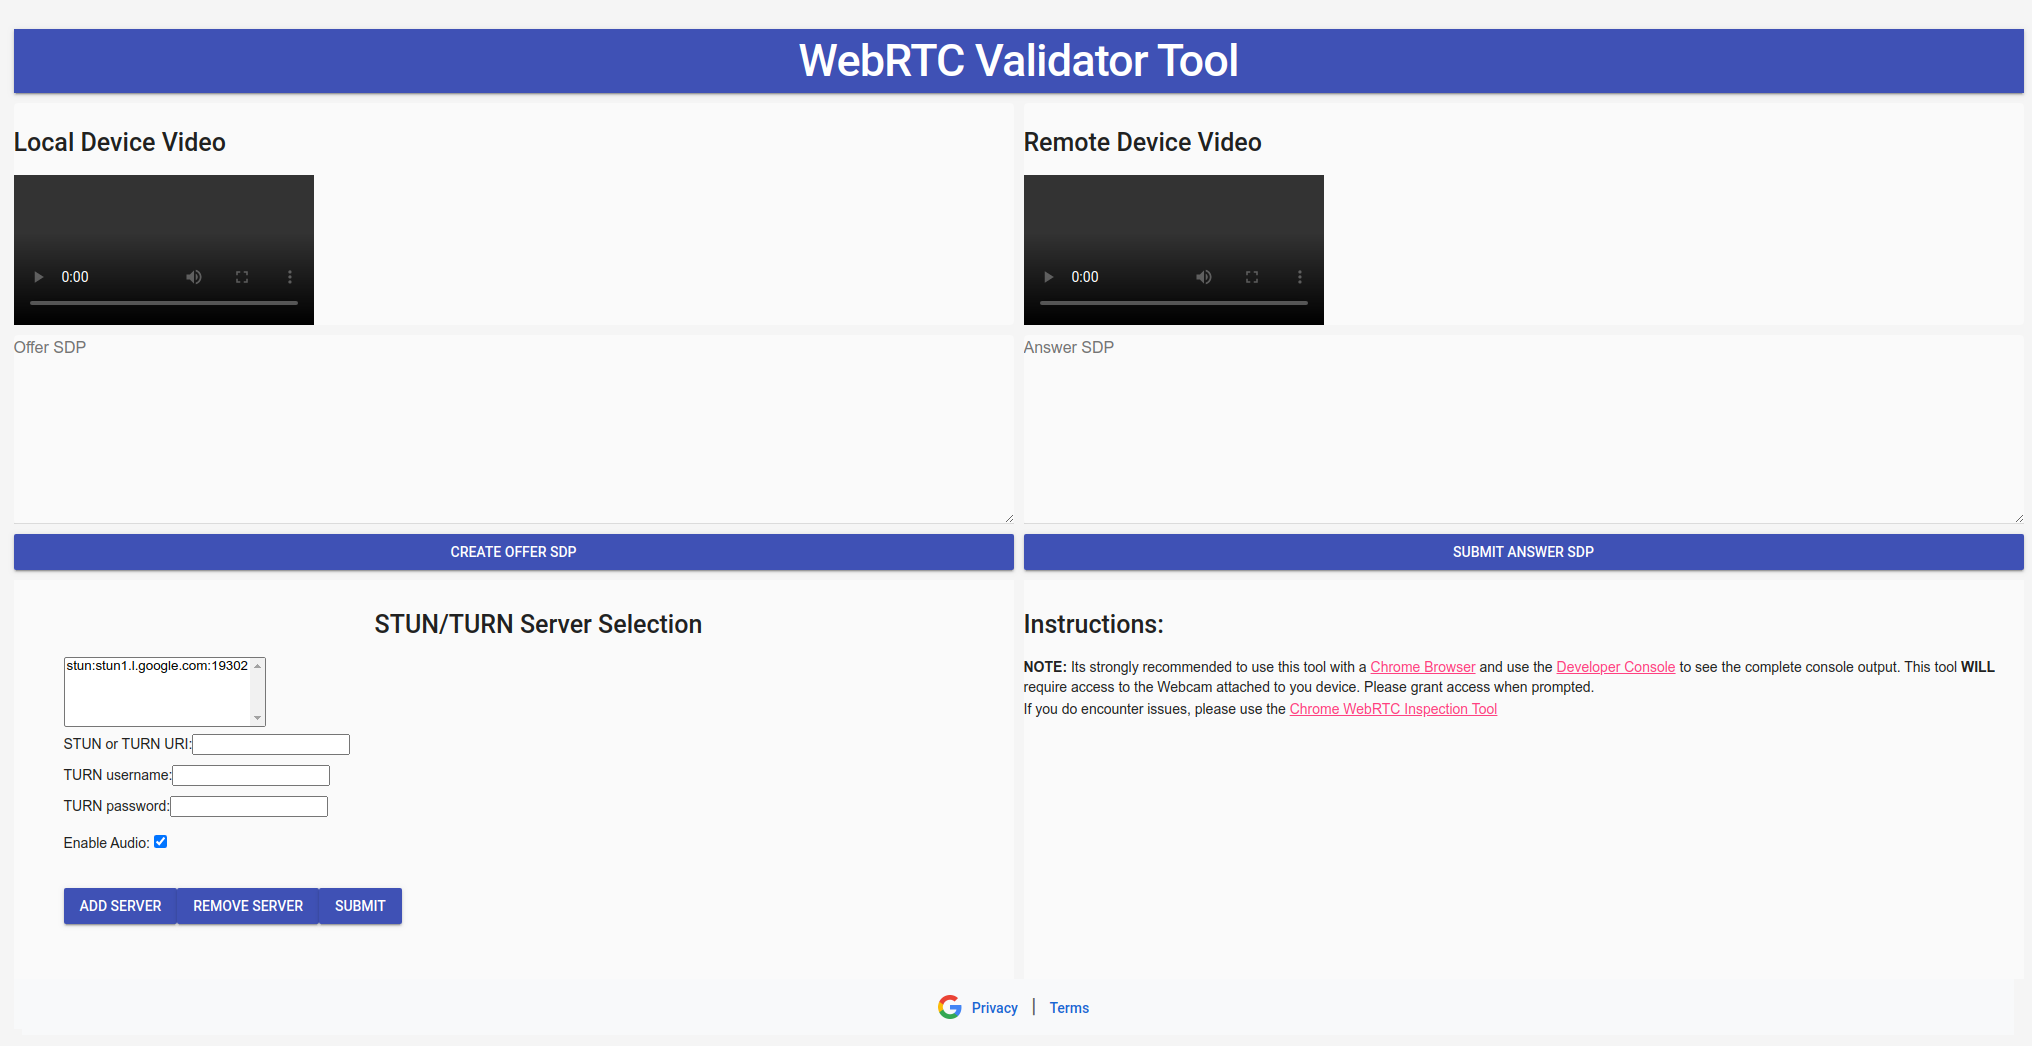 Imagen de descripción general de la herramienta WebRTC Validator.